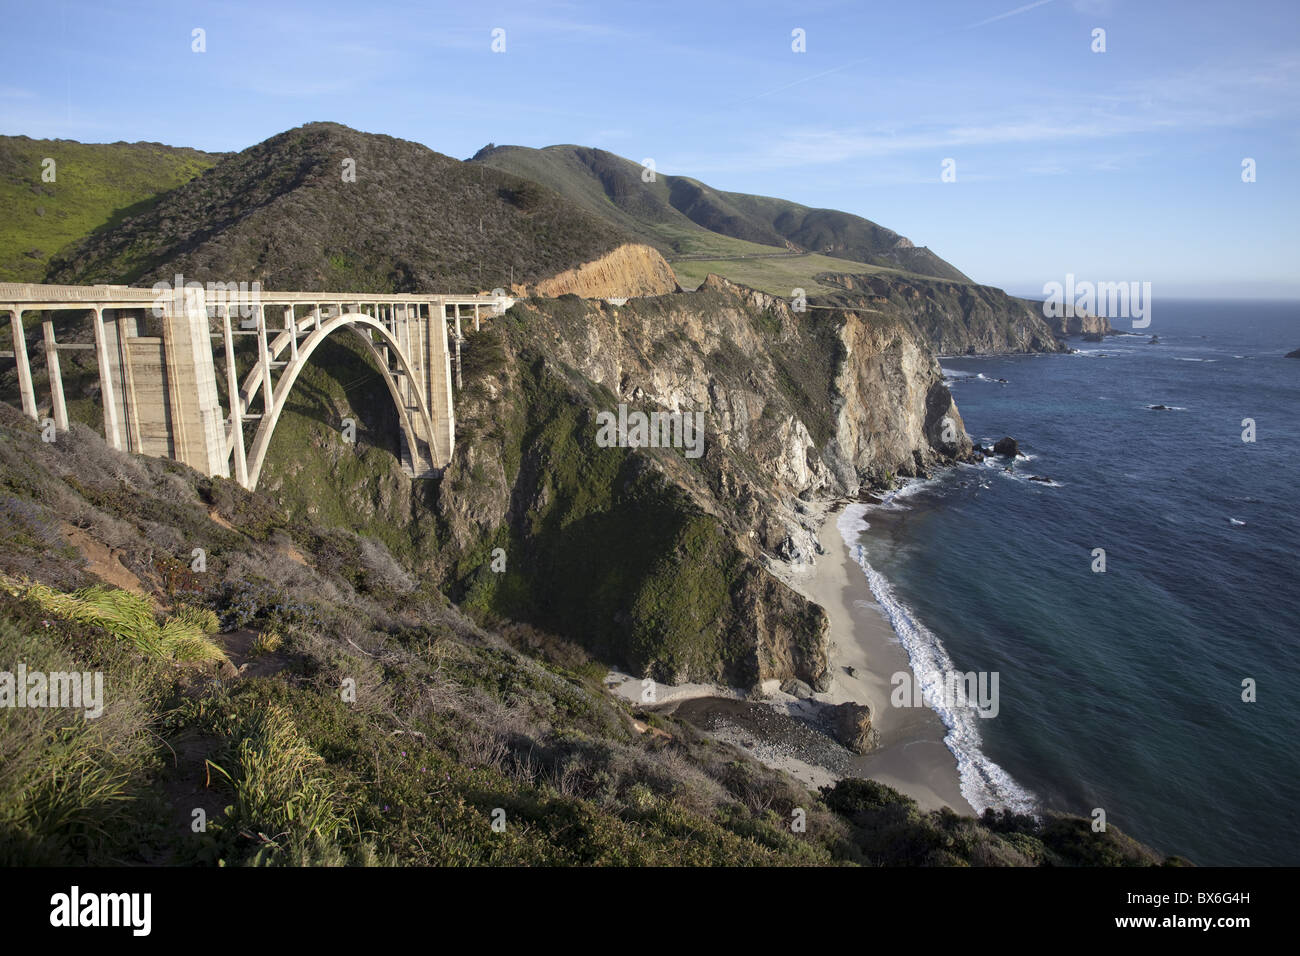 Bixby Bridge entlang Highway 1 nördlich von Big Sur, Kalifornien, Vereinigte Staaten von Amerika, Nordamerika Stockfoto